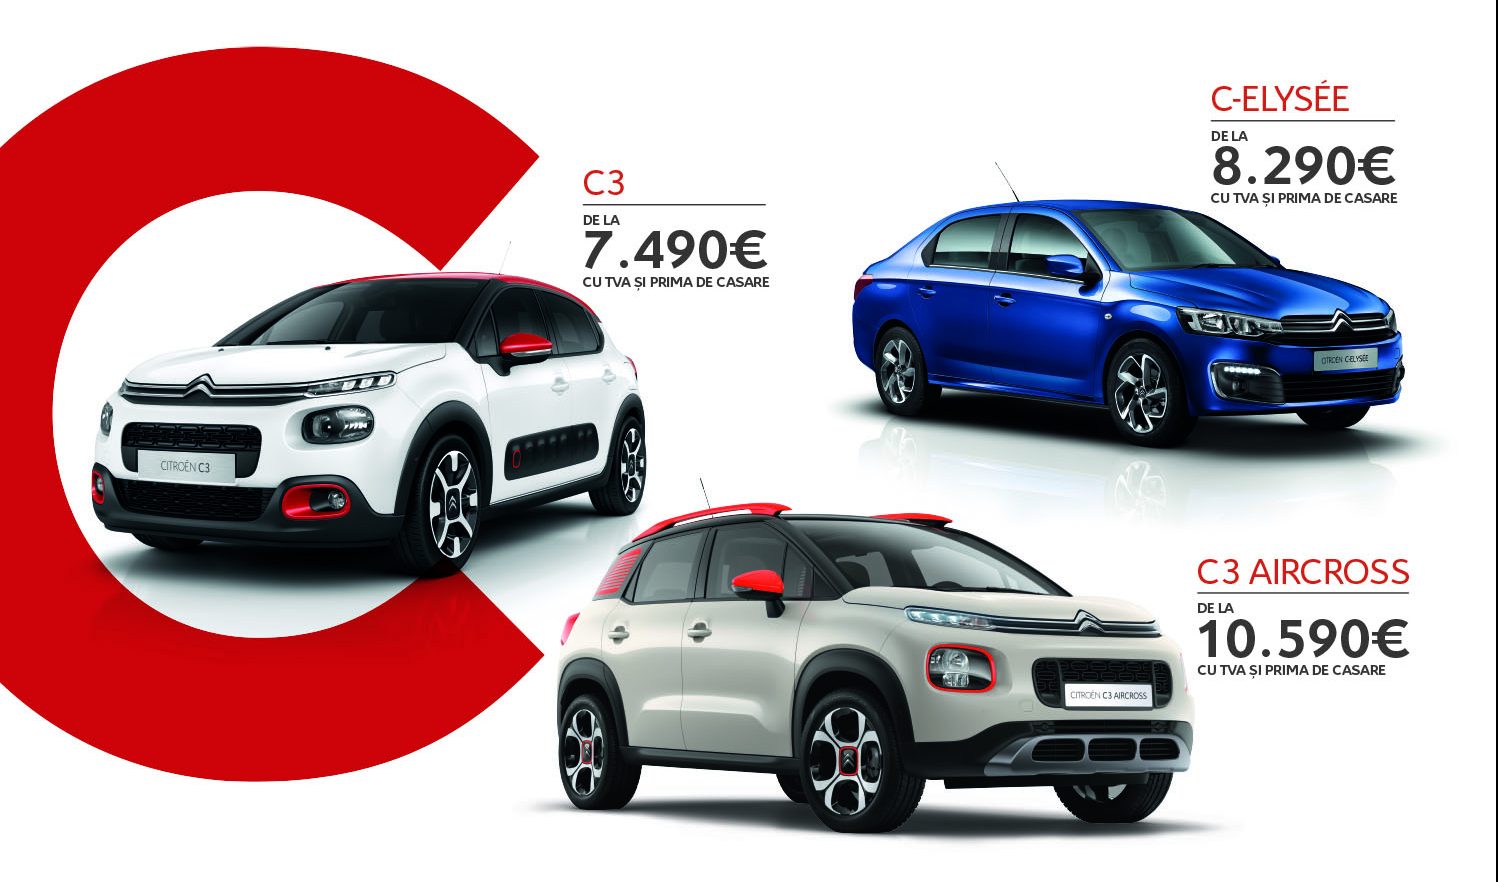 Rabla 2018 declanșeză Citroën Mania